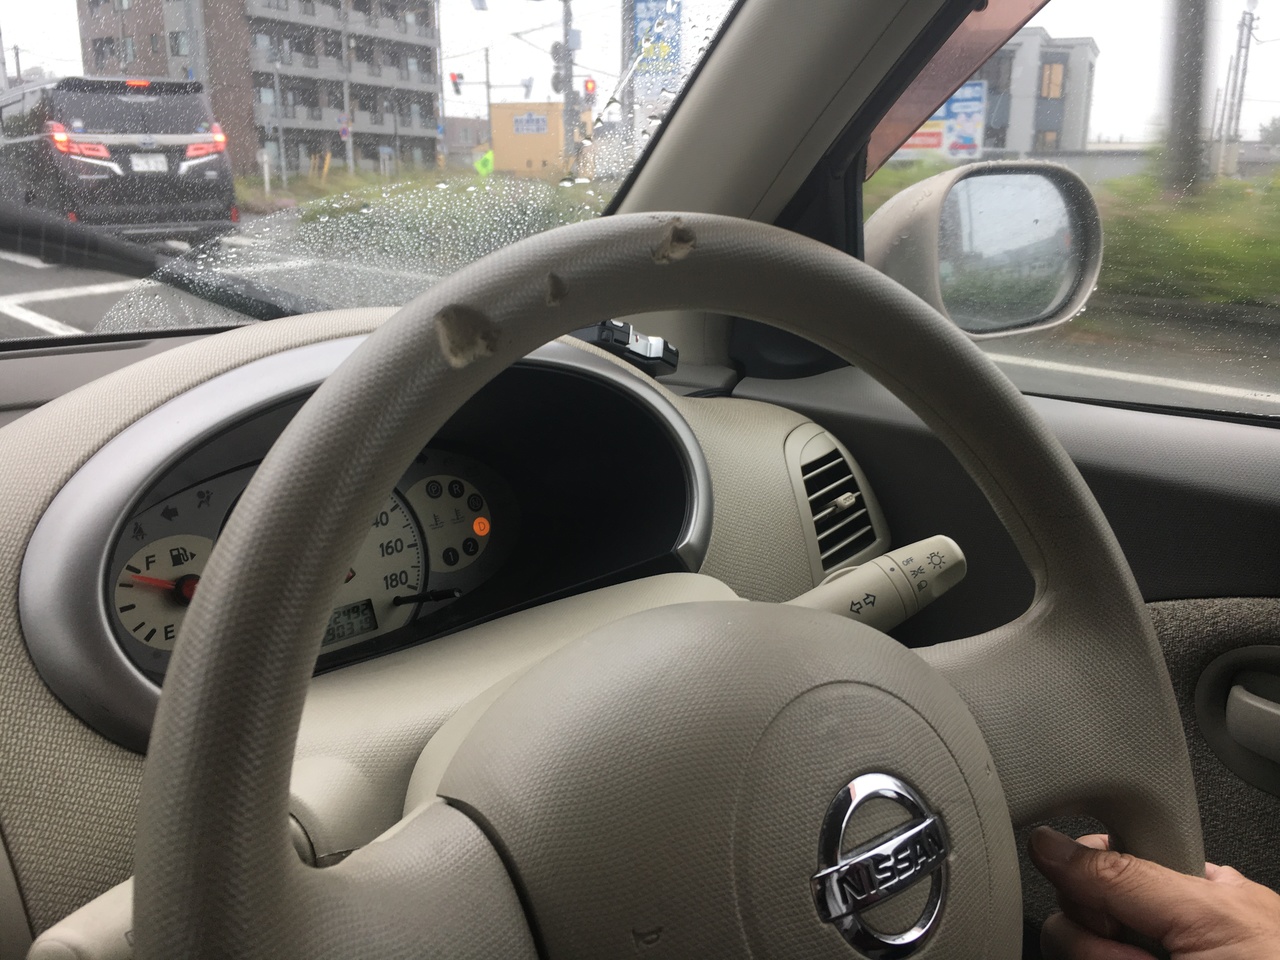 ボロレンタカーでドライブ1 北海道の旅行記 ブログ By Uriepさん フォートラベル